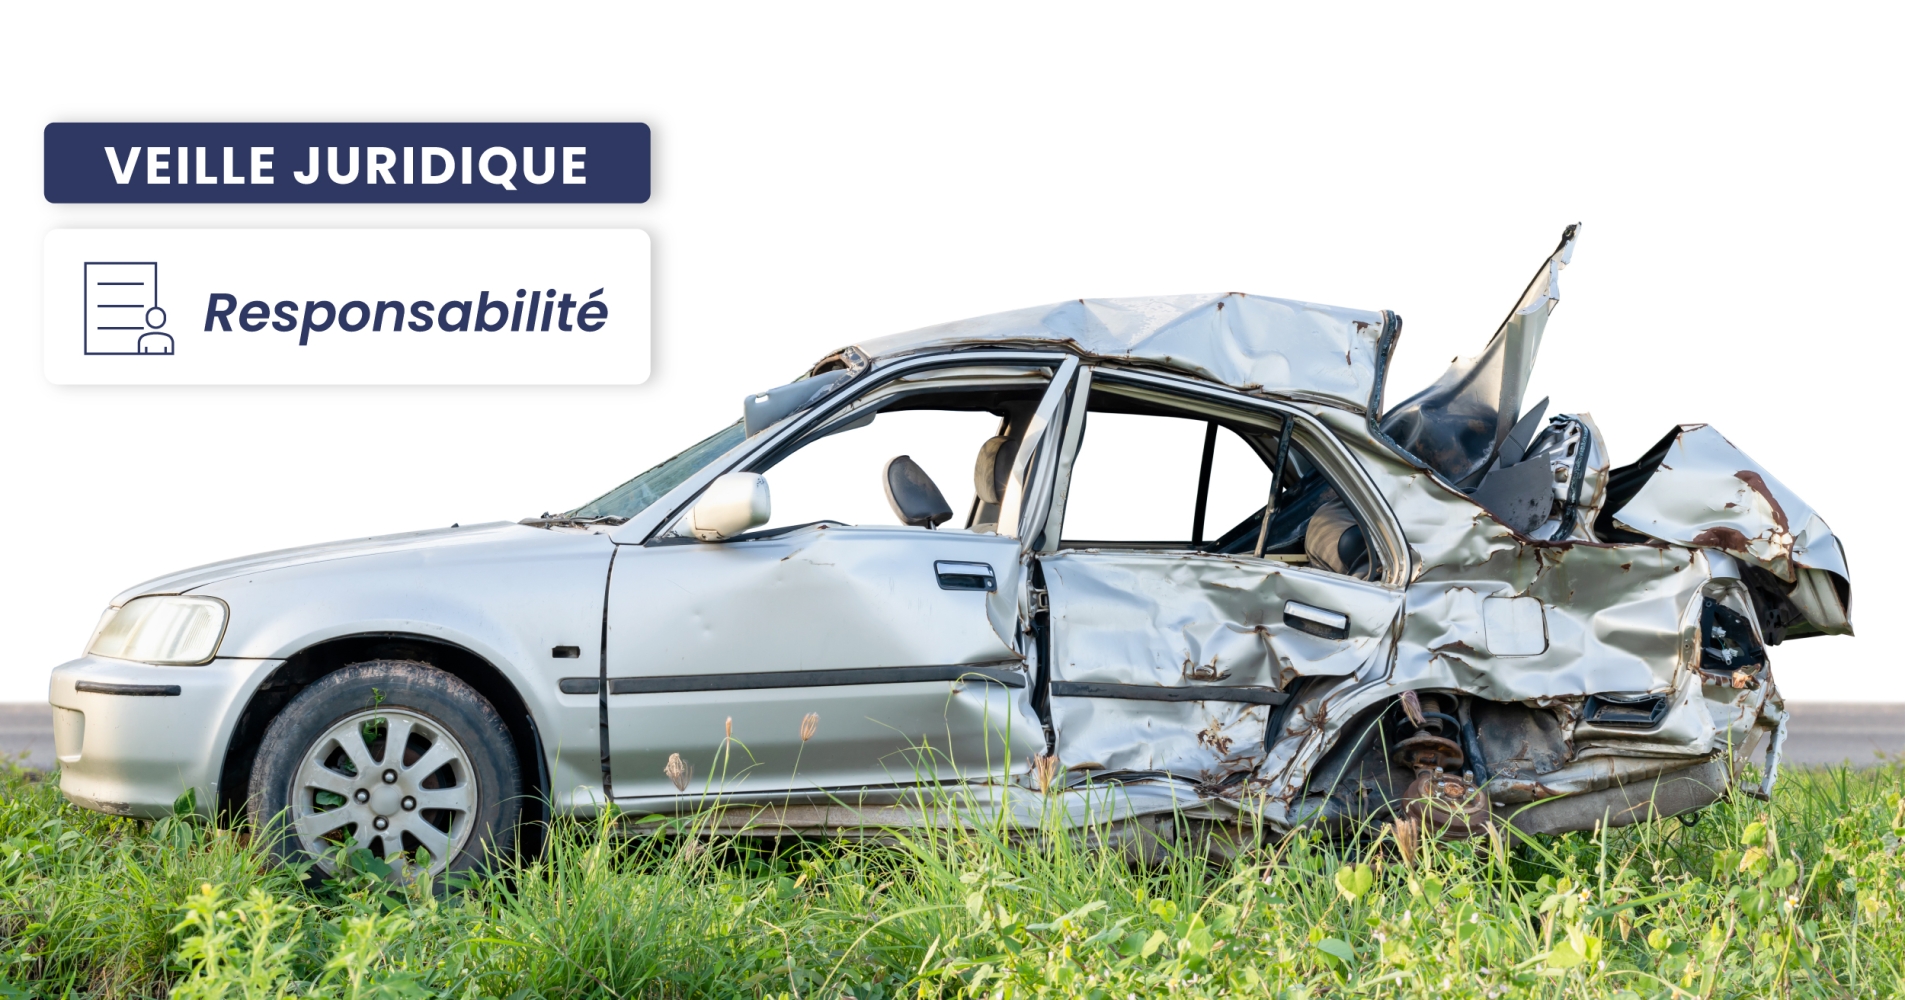 RESPONSABILITÉ – La chute causée par le déneigement de son véhicule peut-elle être prise en charge au titre de la législation professionnelle ?